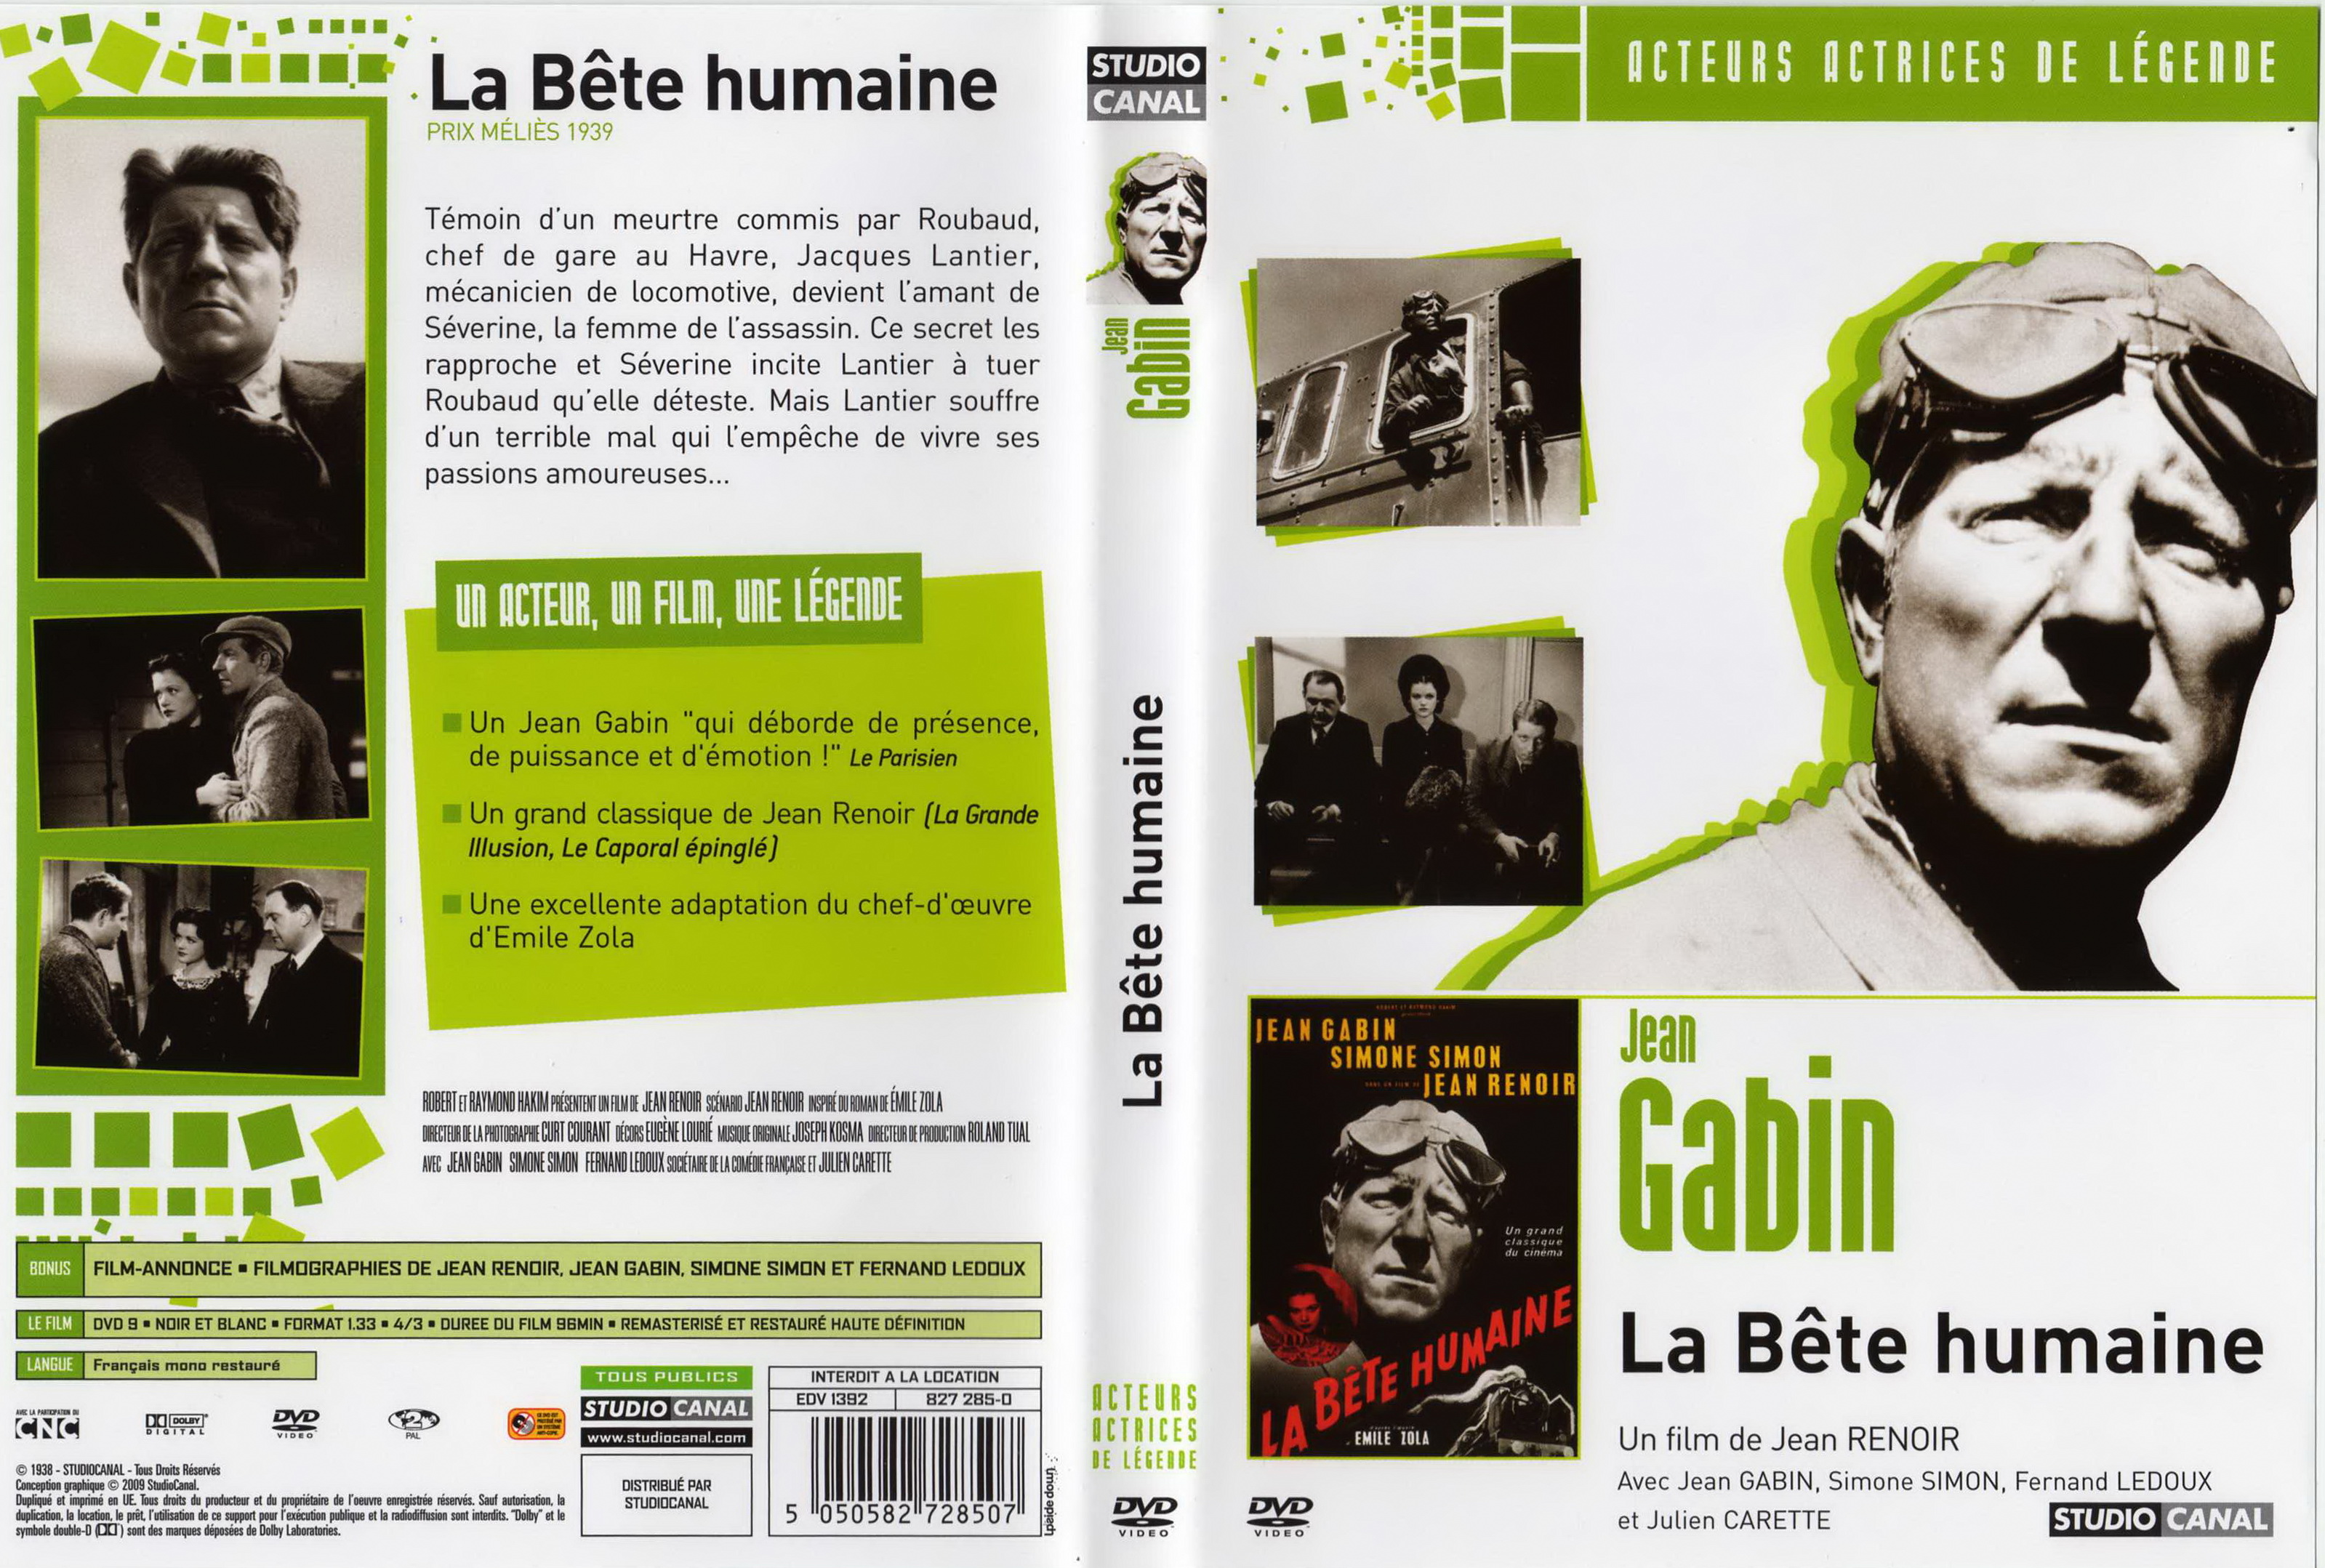 Jaquette DVD La bte humaine v3